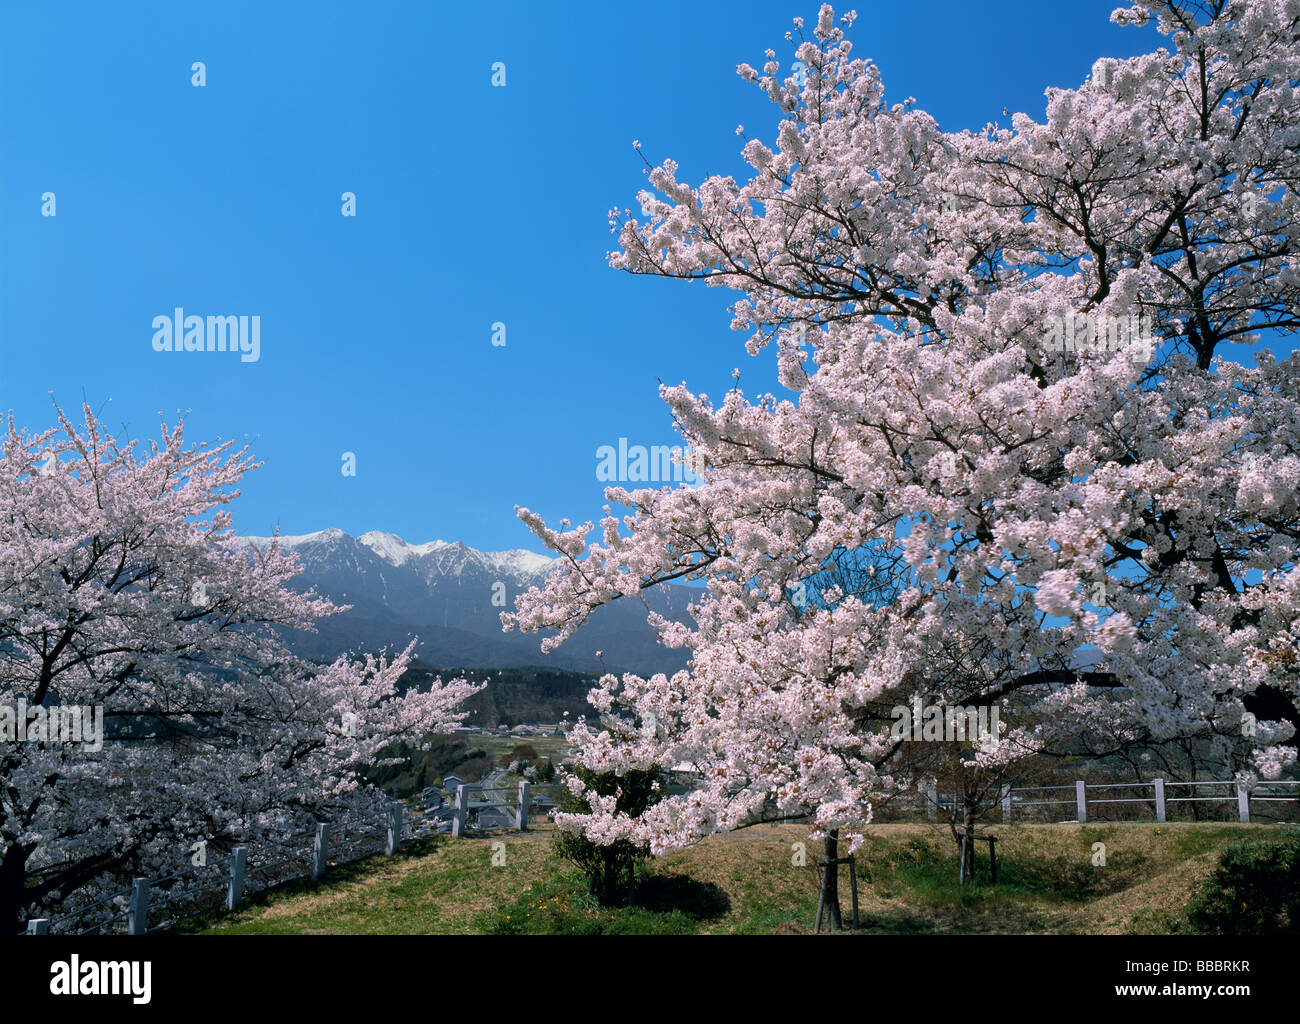 Los Cerezos en flor Foto de stock